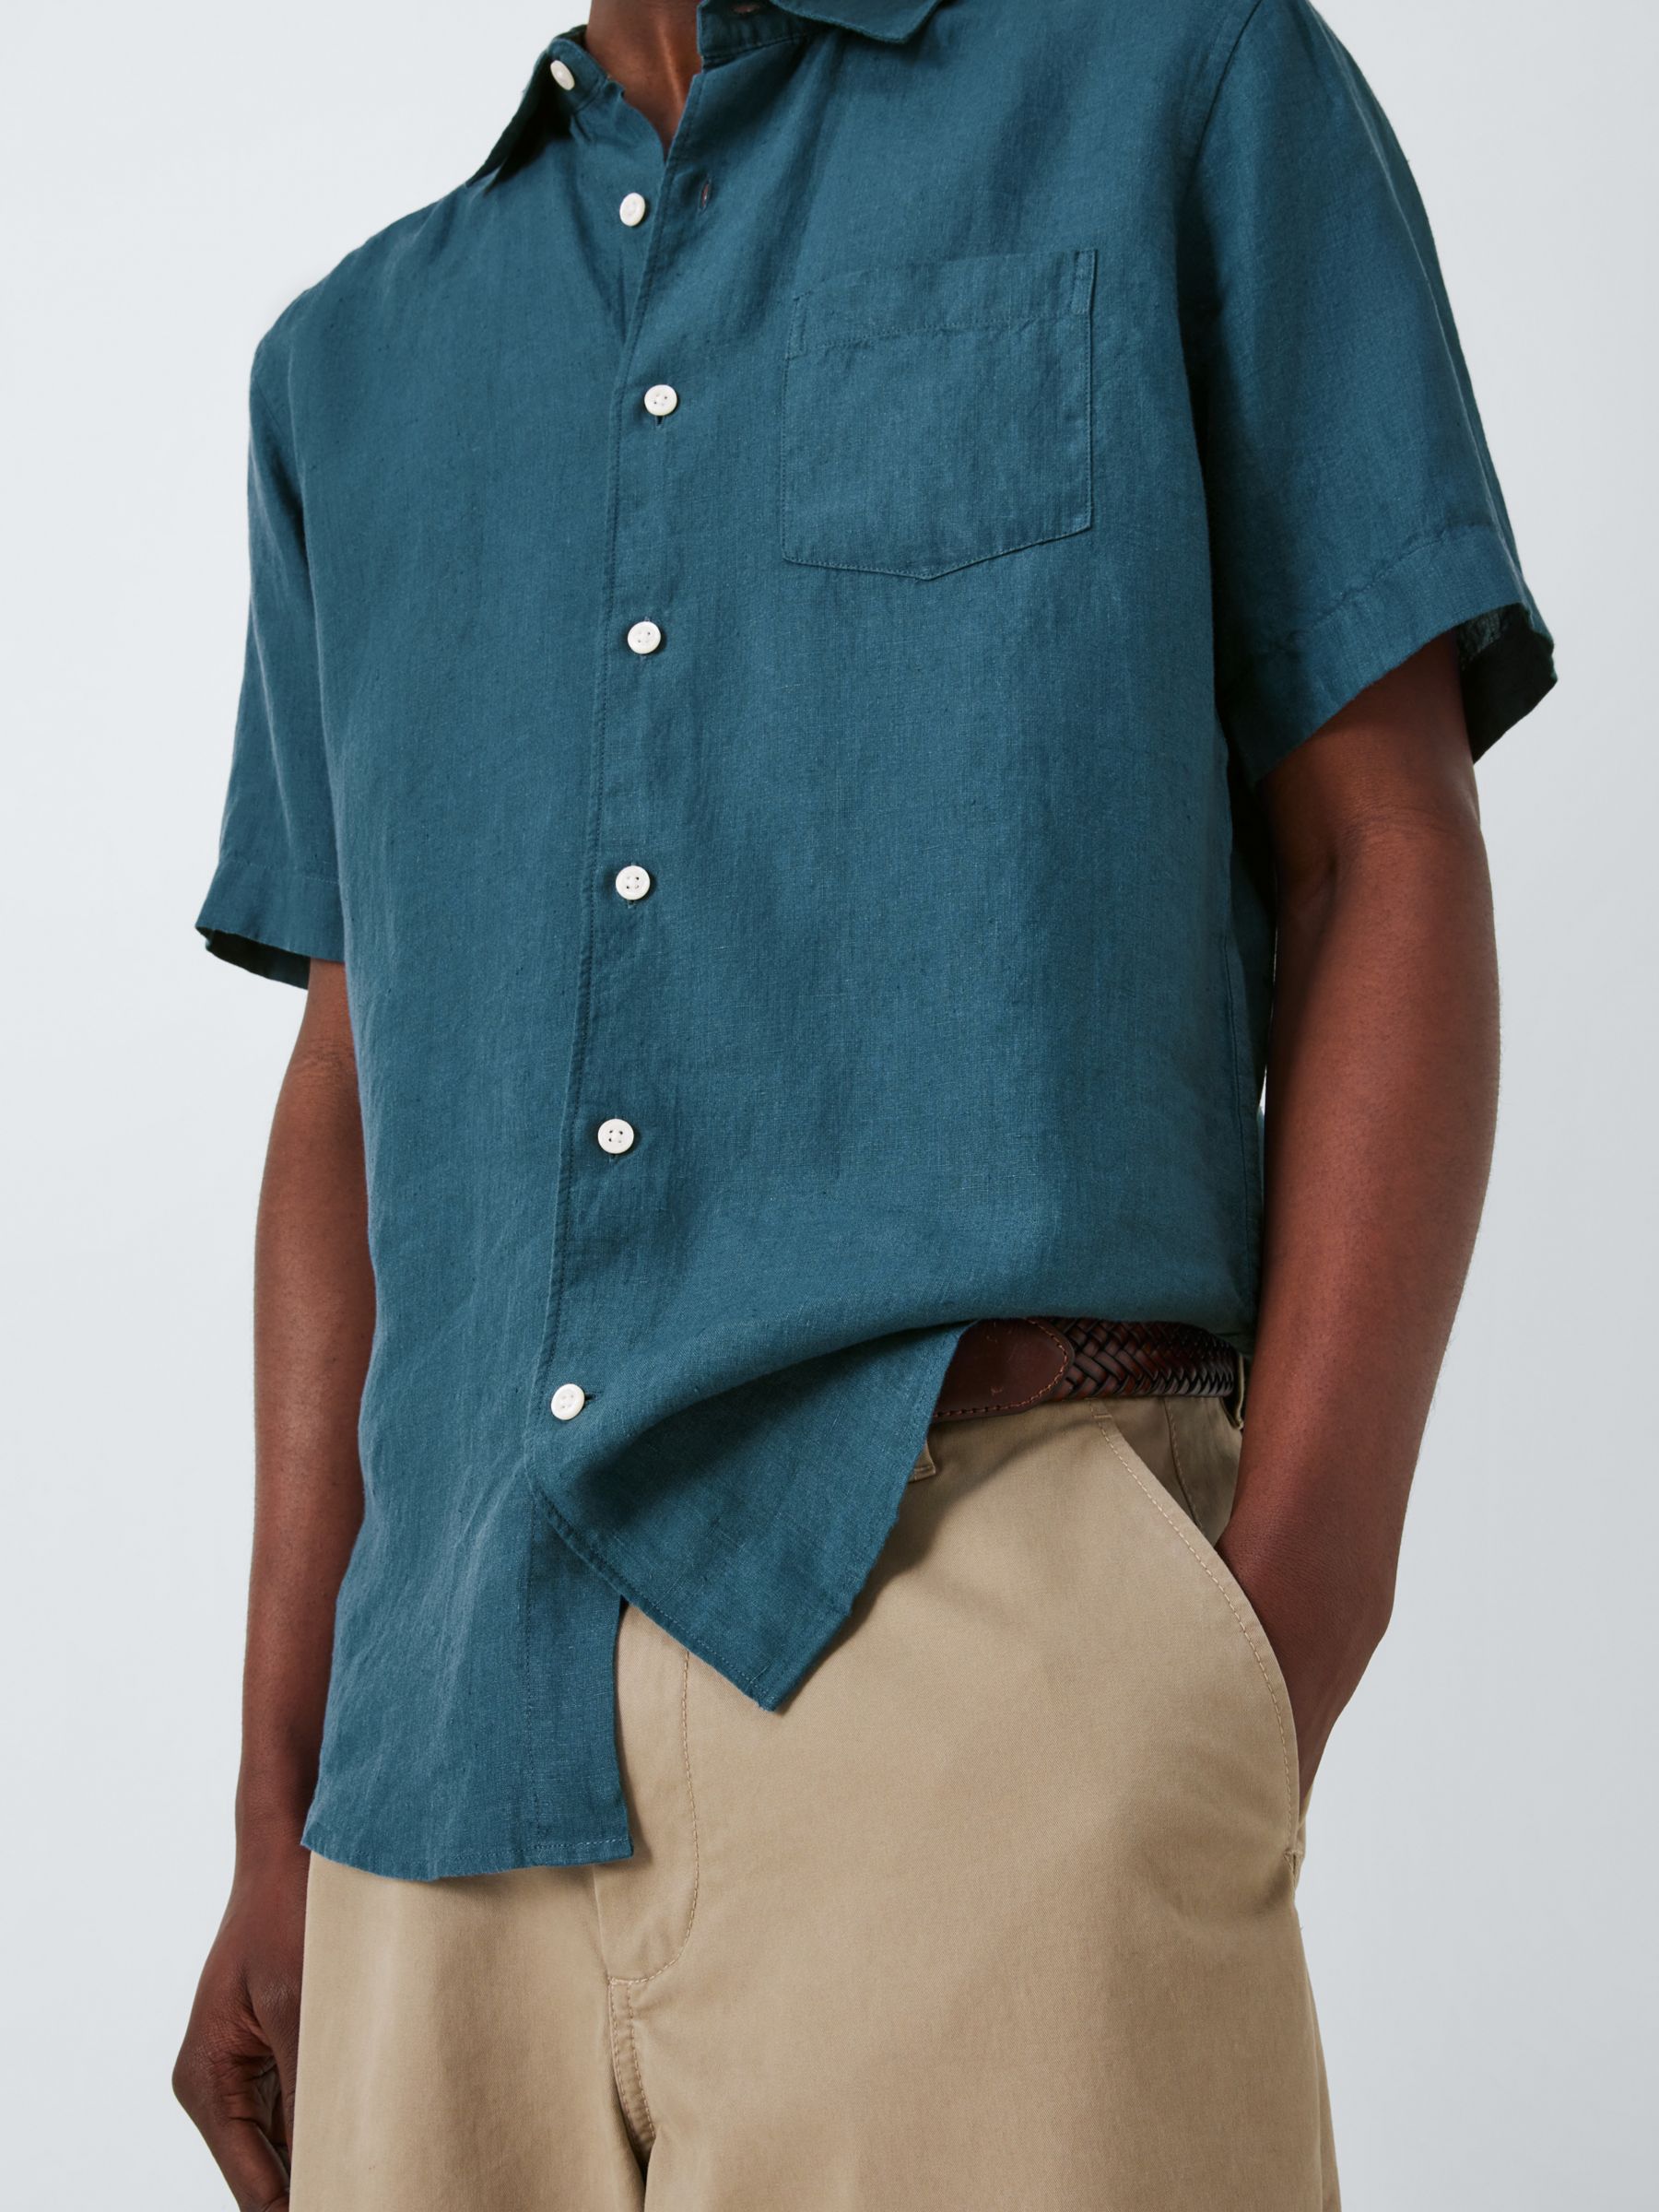 John Lewis Linen Short Sleeve Shirt, Mallard Blue, L